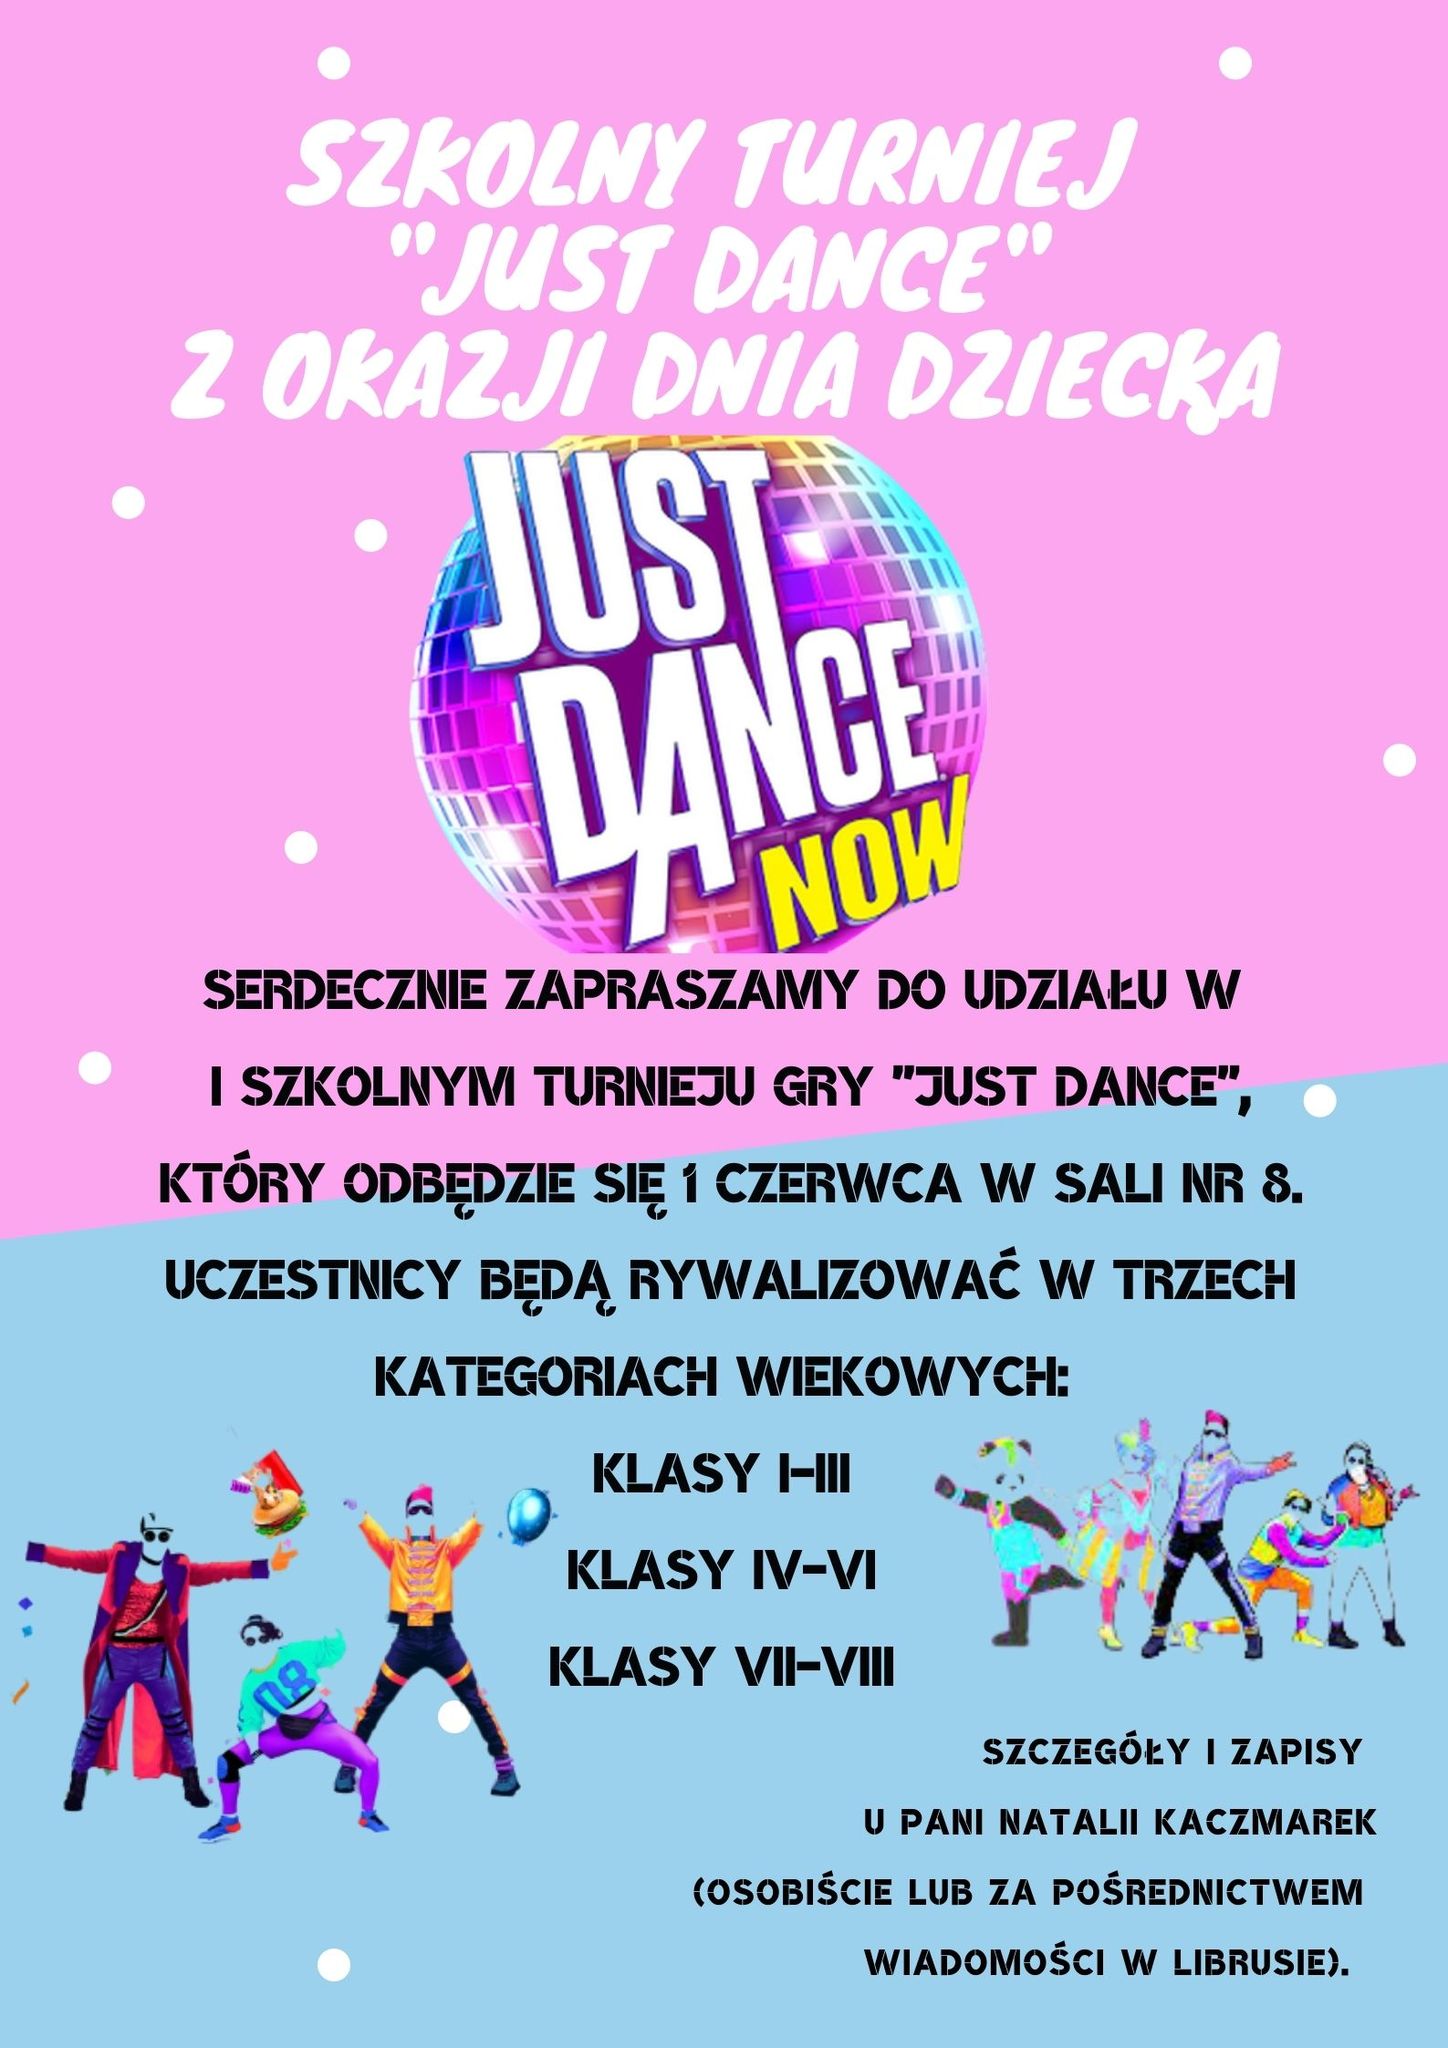 Zaproszenie do wzicia udziau w I Szkolnym Turnieju Just Dance